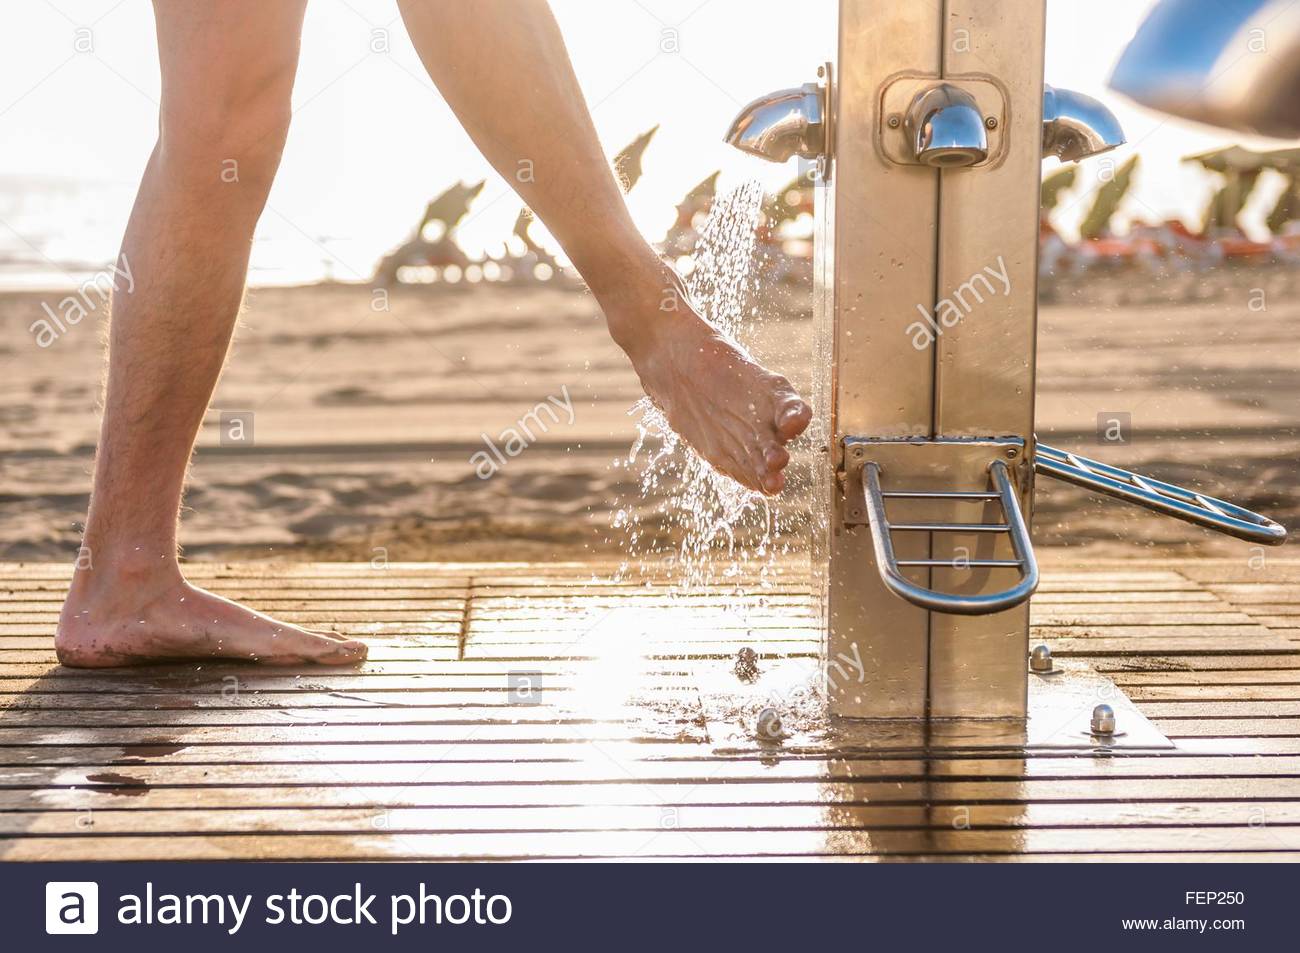 Фигуристая дамочка меняет белье в пляжной кабинке